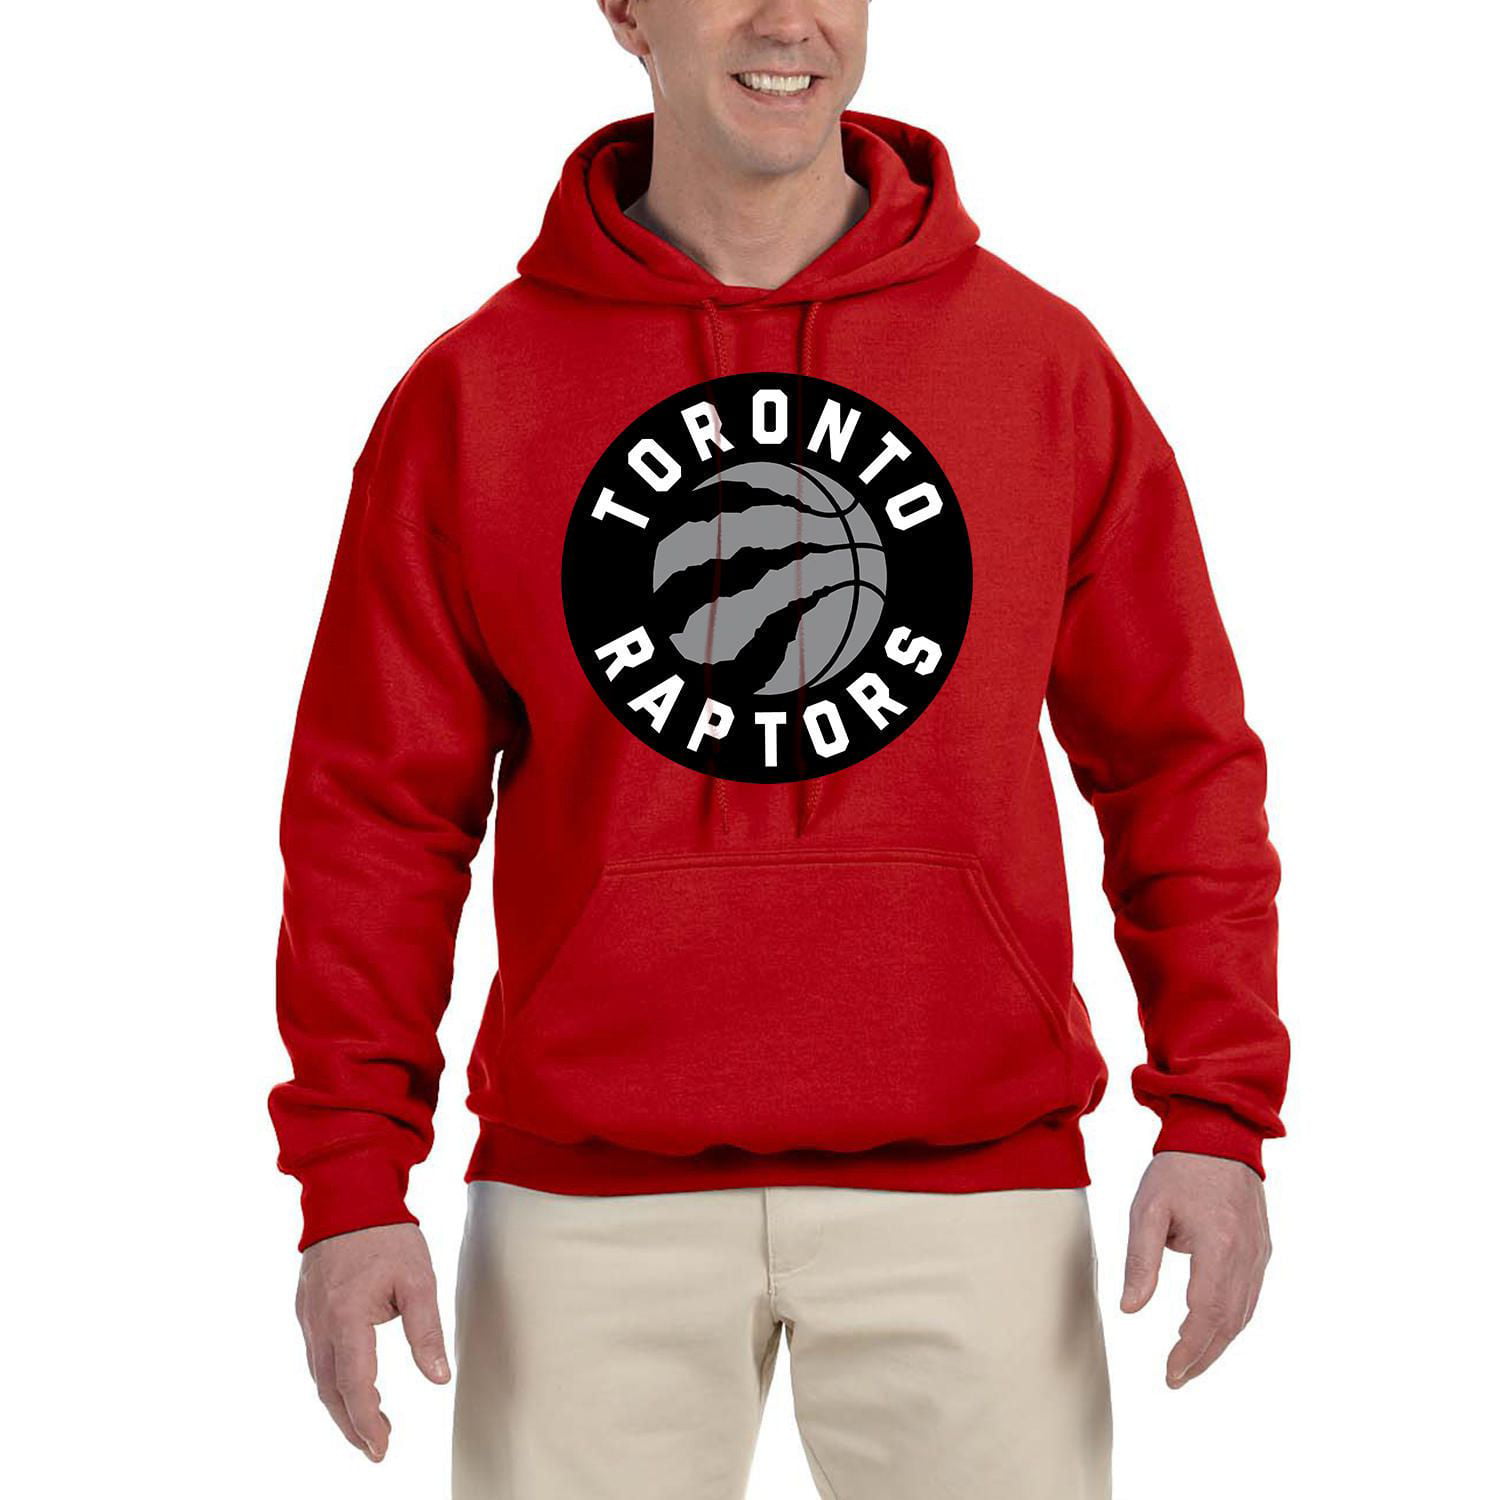 Nike - Men's Toronto Raptors NBA Pullover Hoodie - Red - Fleece